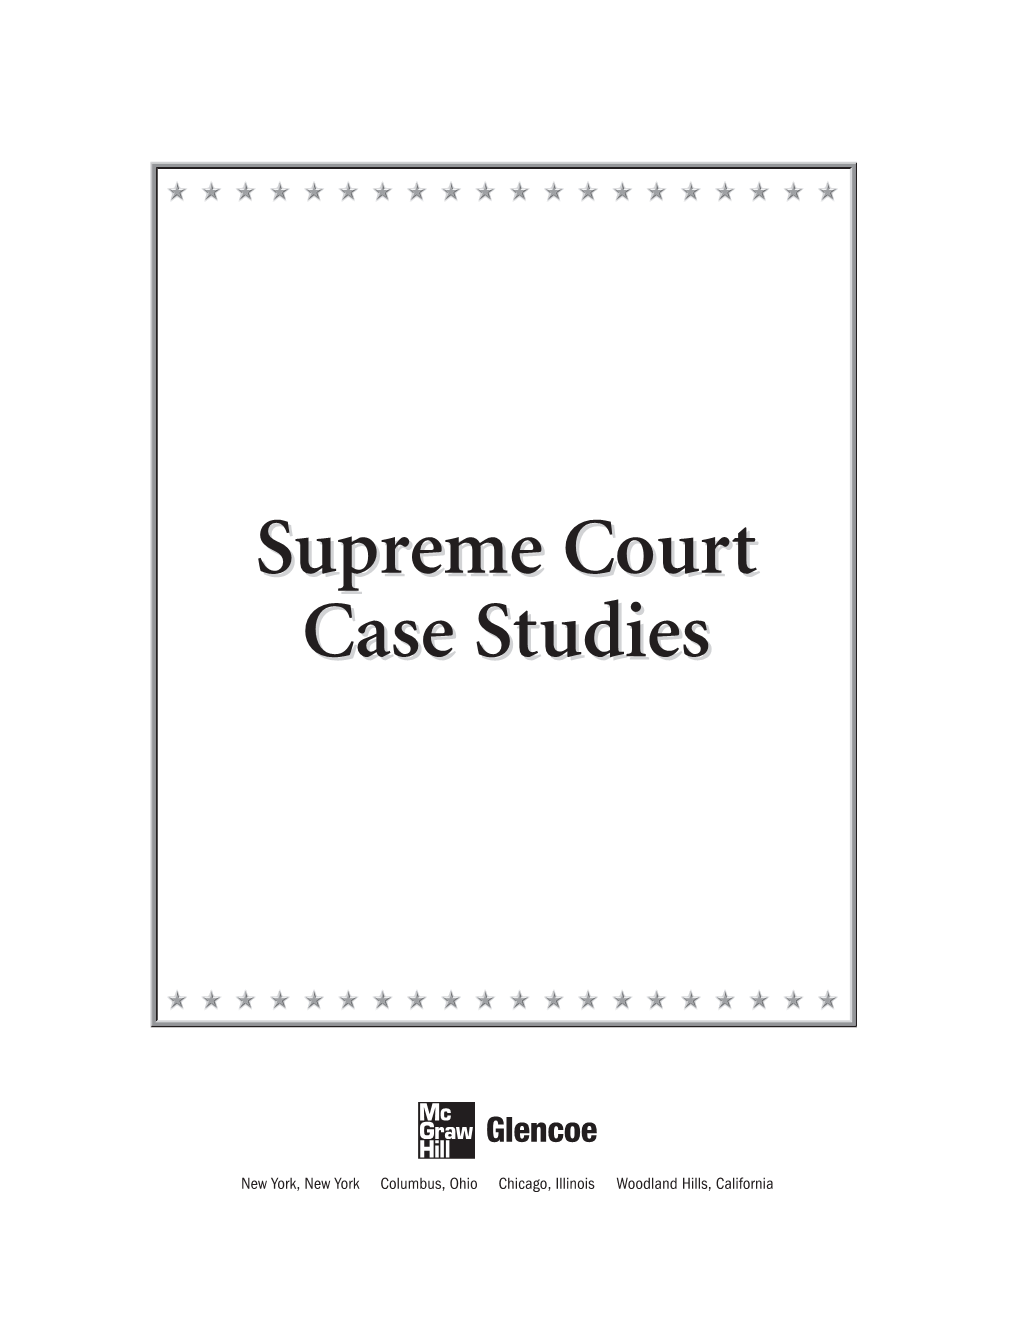 Supreme Court Case Studies Booklet Contains 82 Reproducible Supreme Court Case Studies